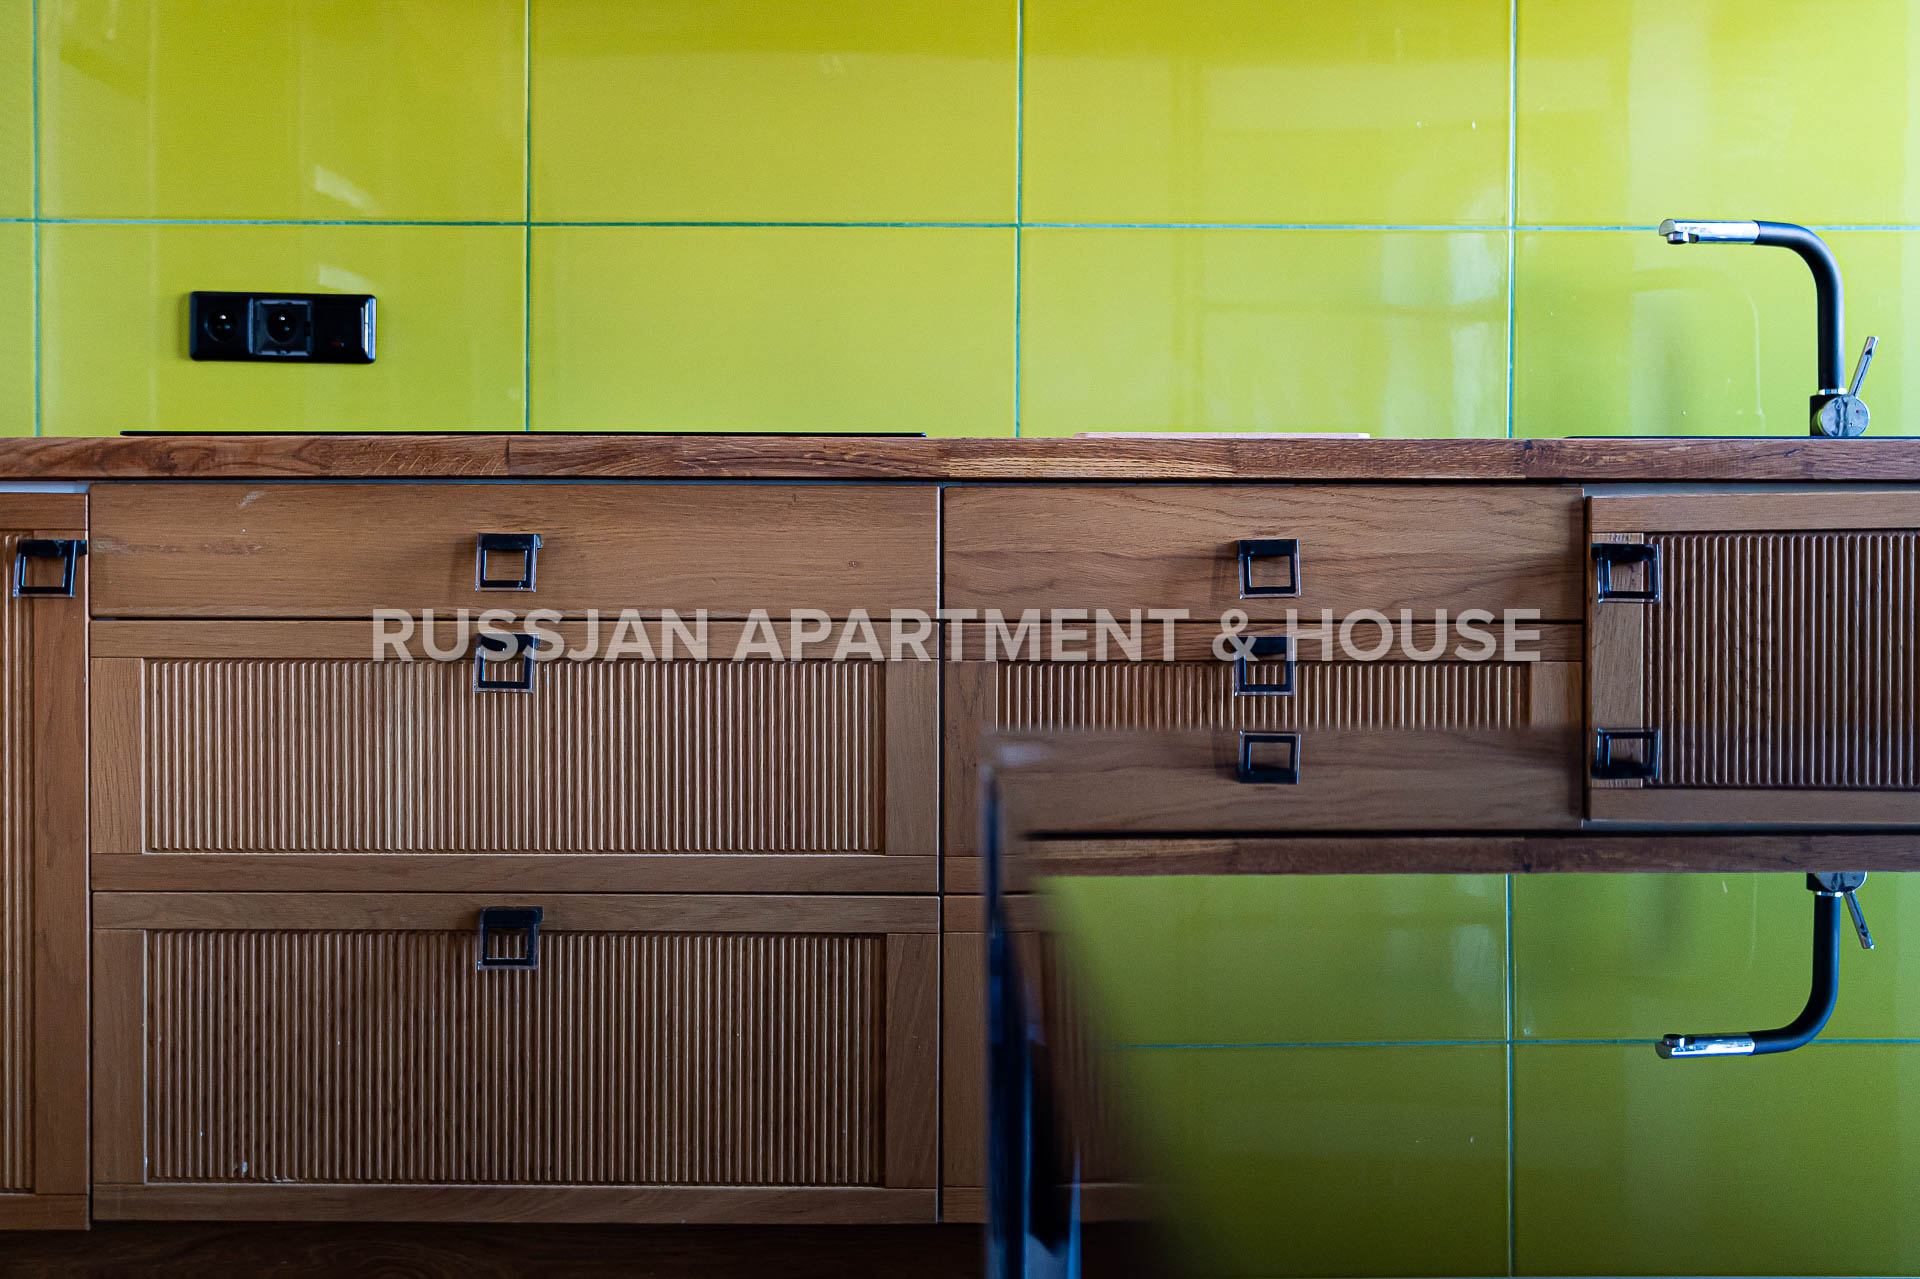  Ulica Wybickiego | RUSSJAN Apartment & House